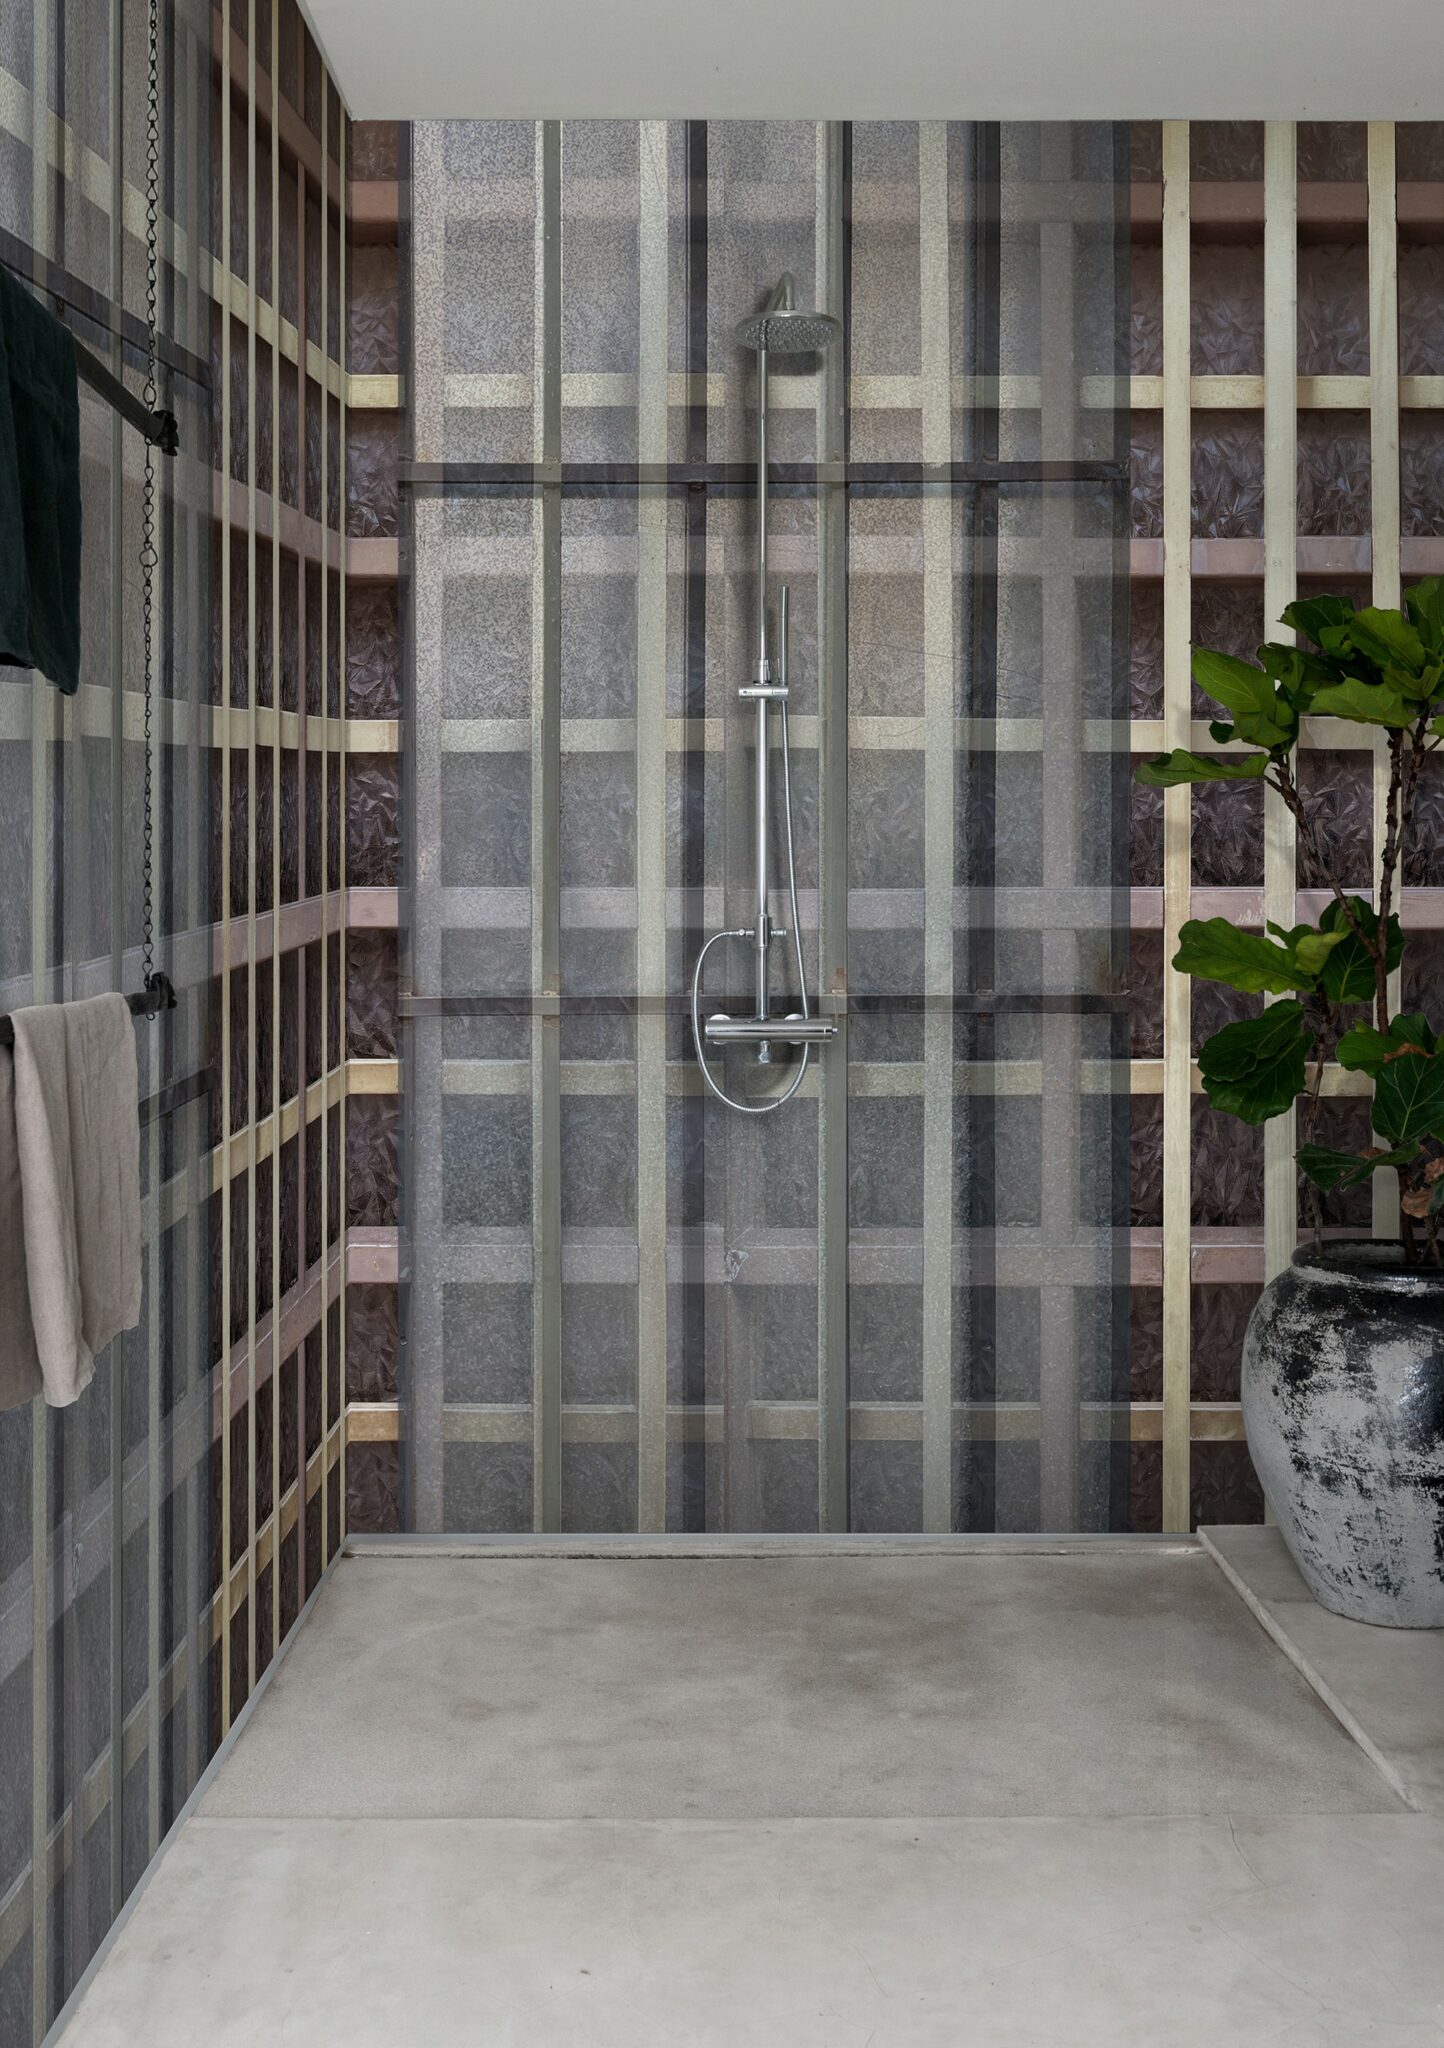 Tapet i dusjen. . Wall&Deco har samarbeidet med dyktige kunstnere og designere skapt et imponerende utvalg av mønstre, farger og teksturer som kan tilpasses etter kundens preferanser. Dette gjør det mulig å skape unike og personlige veggdekorasjoner som passer perfekt inn i ethvert rom.